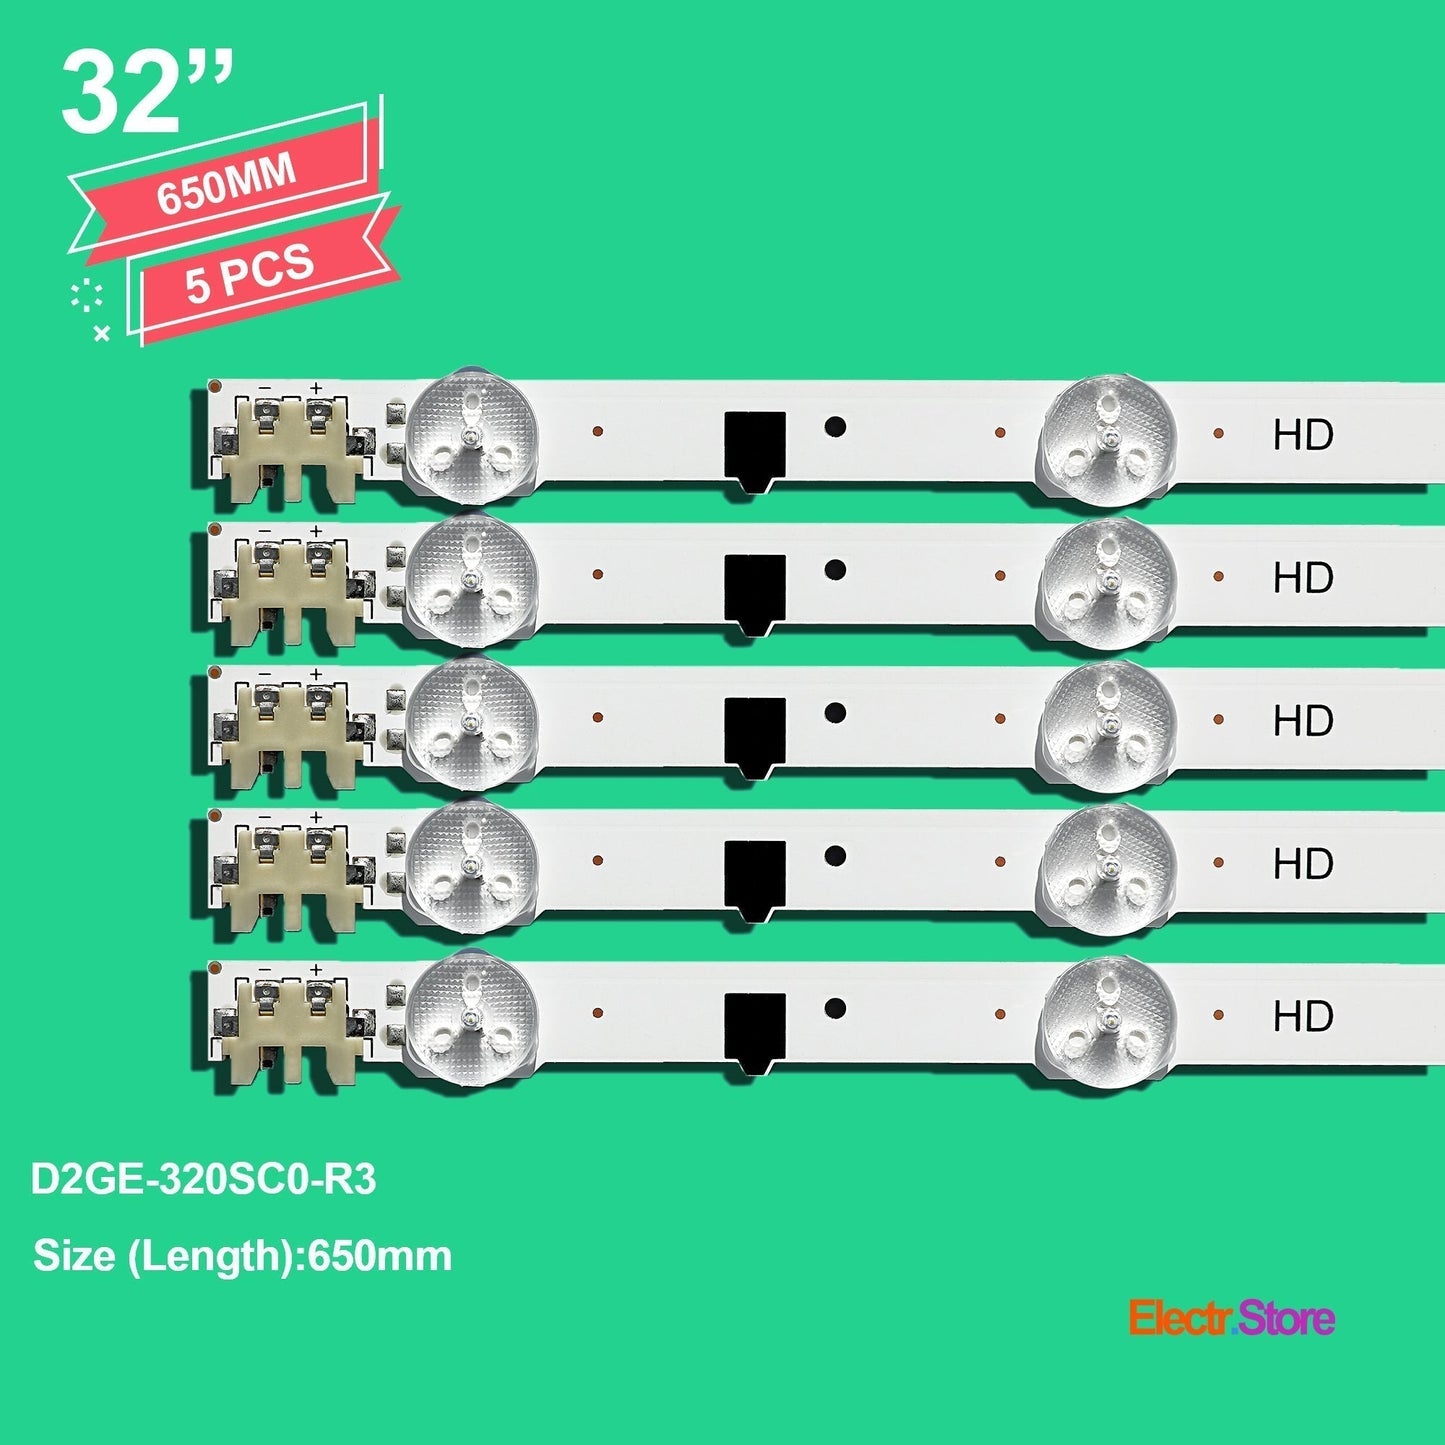 LED Backlight Strip Kits, 2013SVS32F, 2013SVS32H, BN96-28489A, BN96-25300A, BN96-25299A, D2GE-320SC0-R3 (5 pcs/kit), for TV 32" SAMSUNG: UE32F5070, UE32F6270, UE32F4570, UE32F5300 32" D2GE-320SC0-R3 LED Backlights Samsung Electr.Store